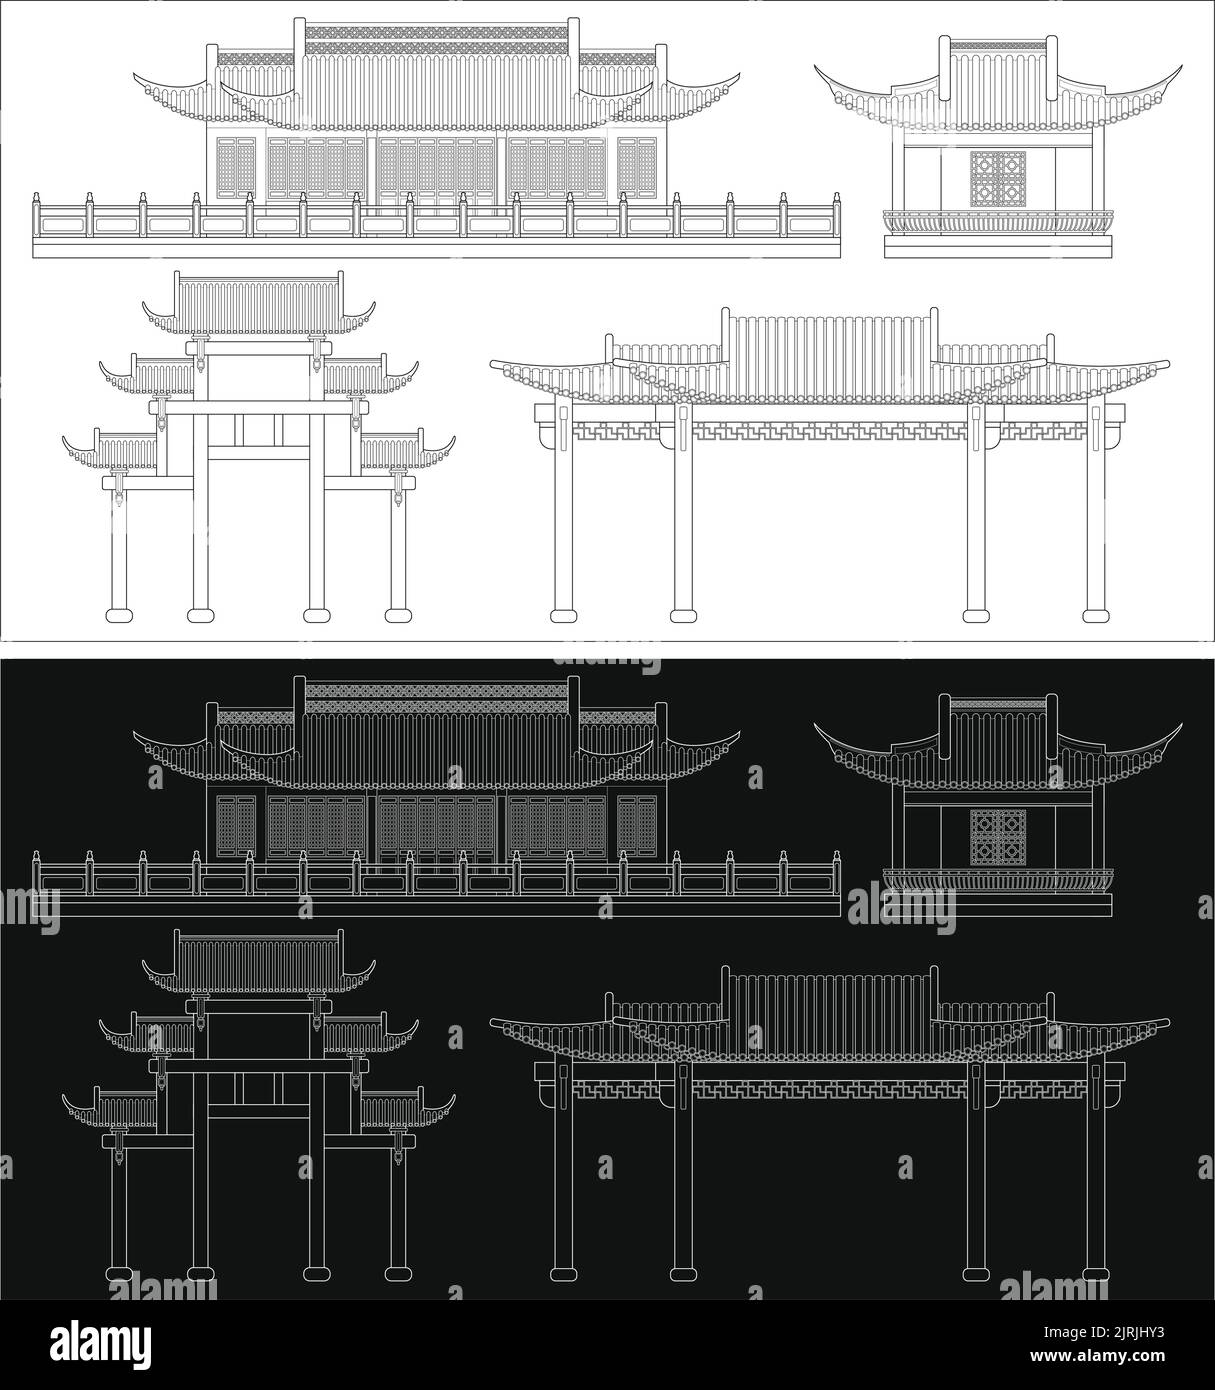 Mehrschichtige, bearbeitbare Vektordarstellung von Gebäuden im traditionellen chinesischen Stil, einschließlich Häusern, Pavillons und Torbögen. Stock Vektor